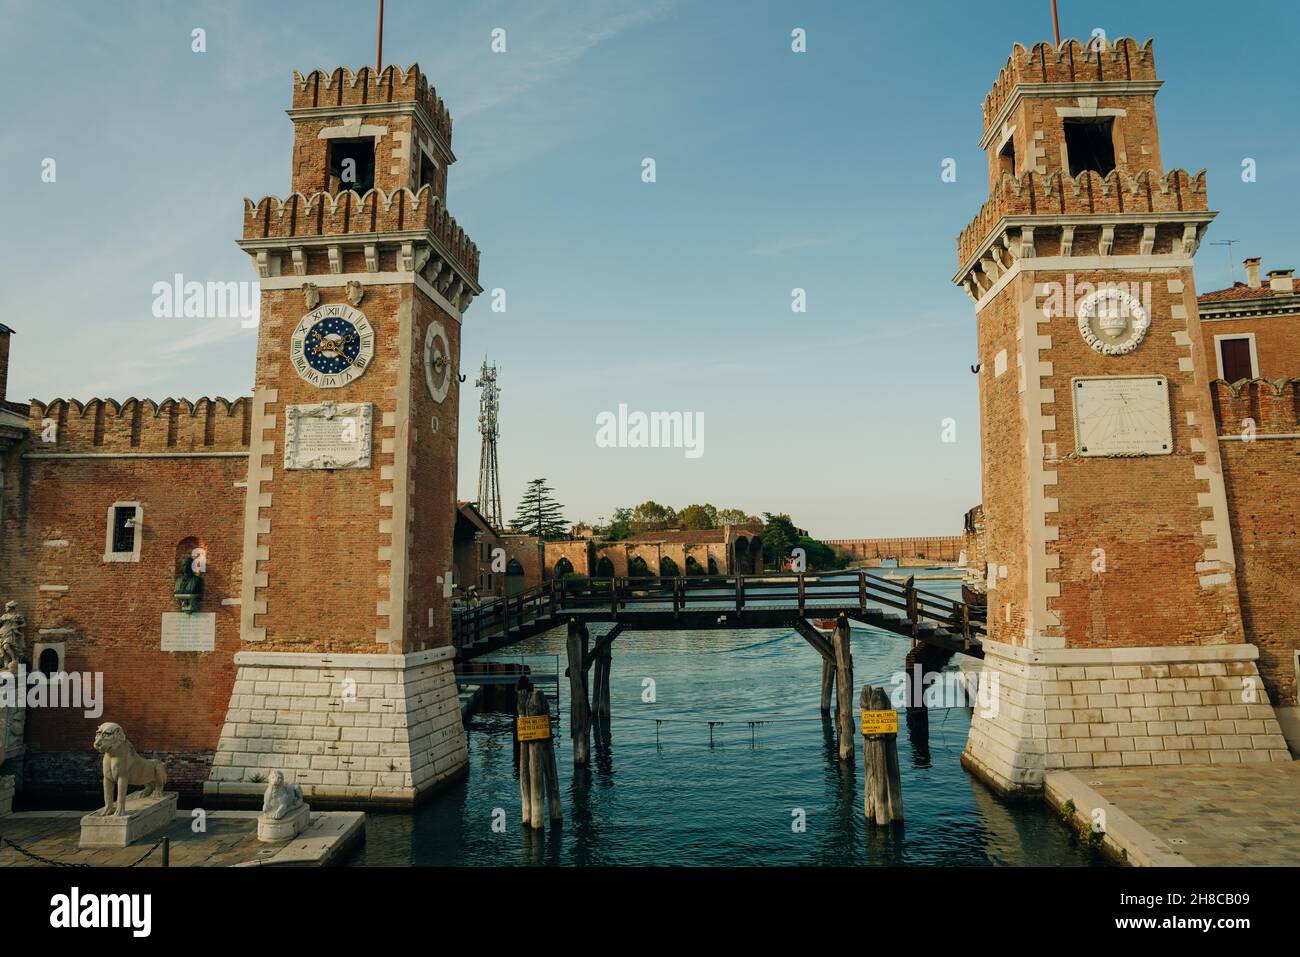 Veduta dell'Arsenale veneziano complesso di ex cantieri e armamenti. Venezia, Italia- Sep, 2021. Foto di alta qualità Foto Stock